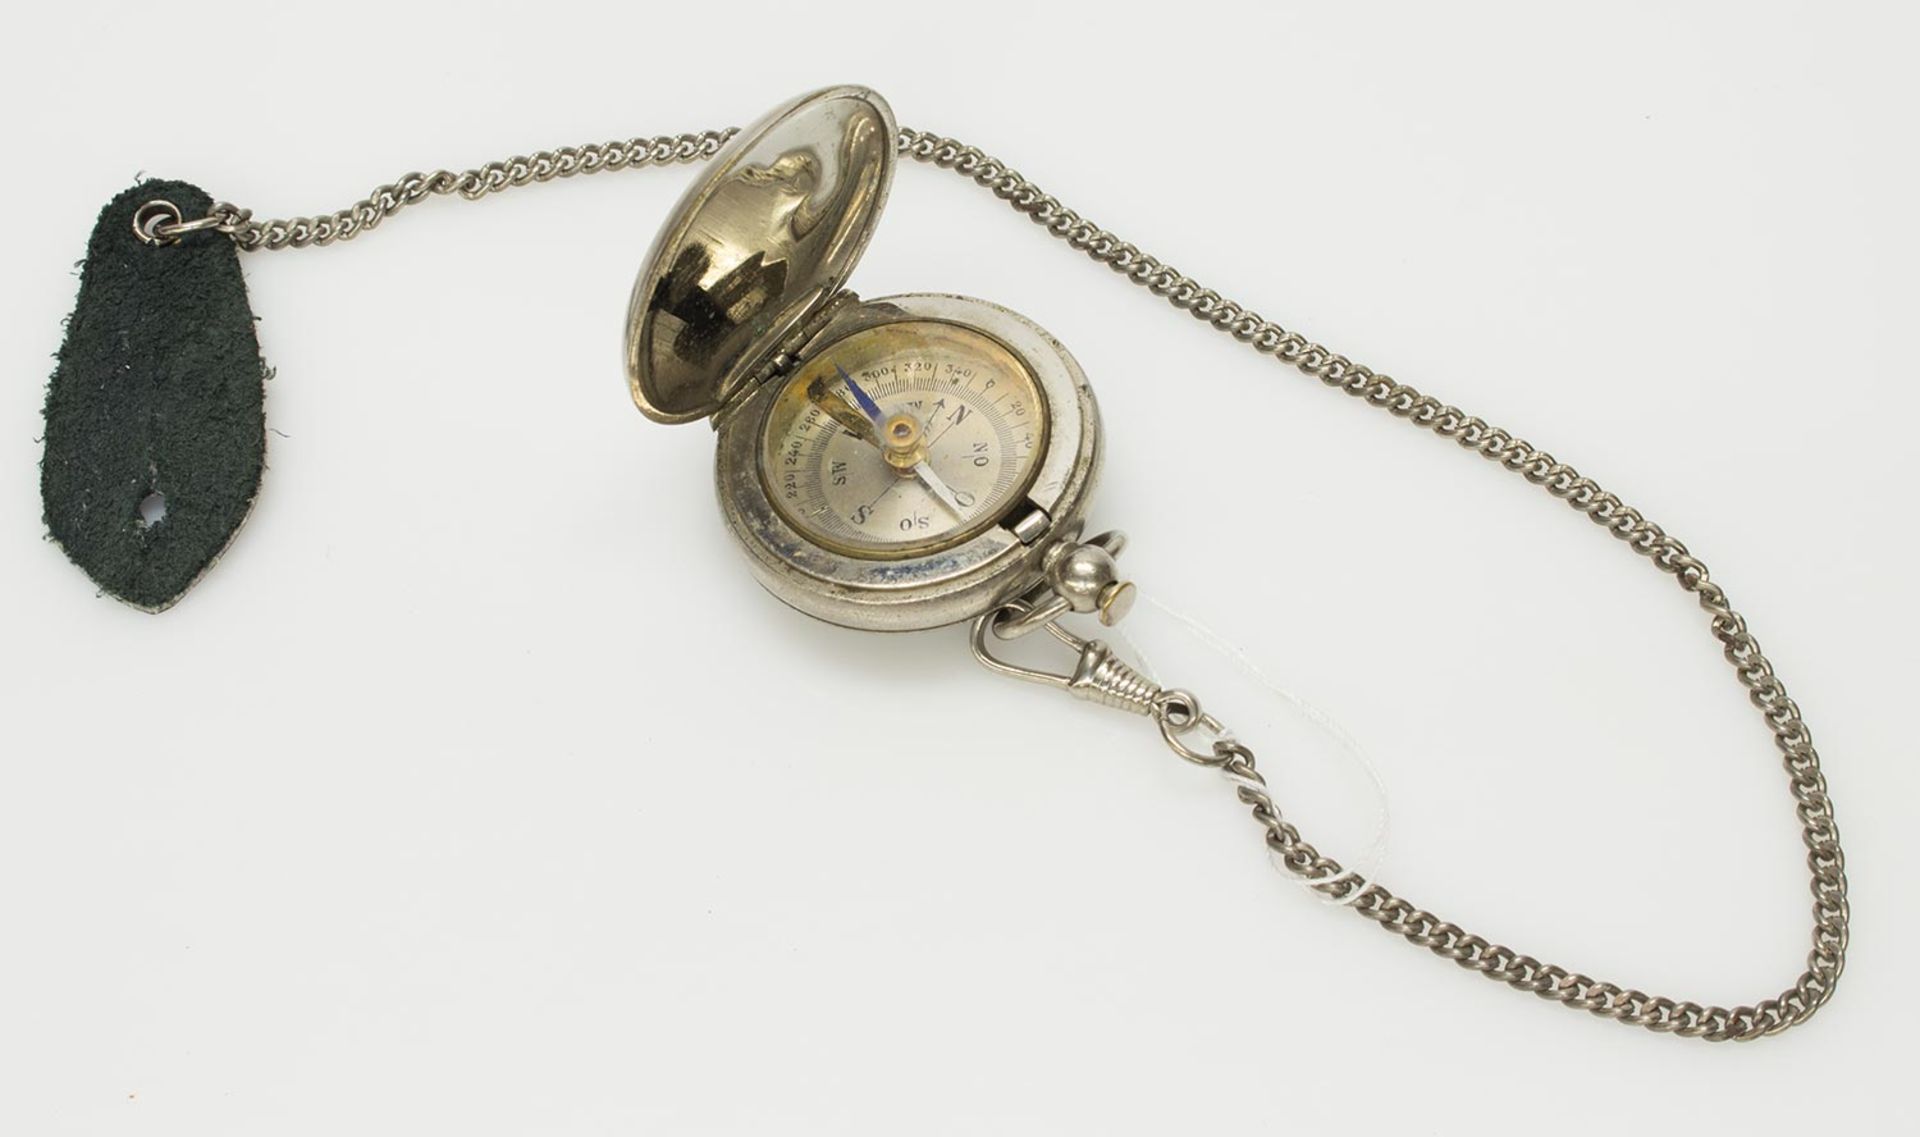 Kompassklappbarer Kompass im Metallgehäuse, mit Kette u. Knopflochlasche, D. 4 cm